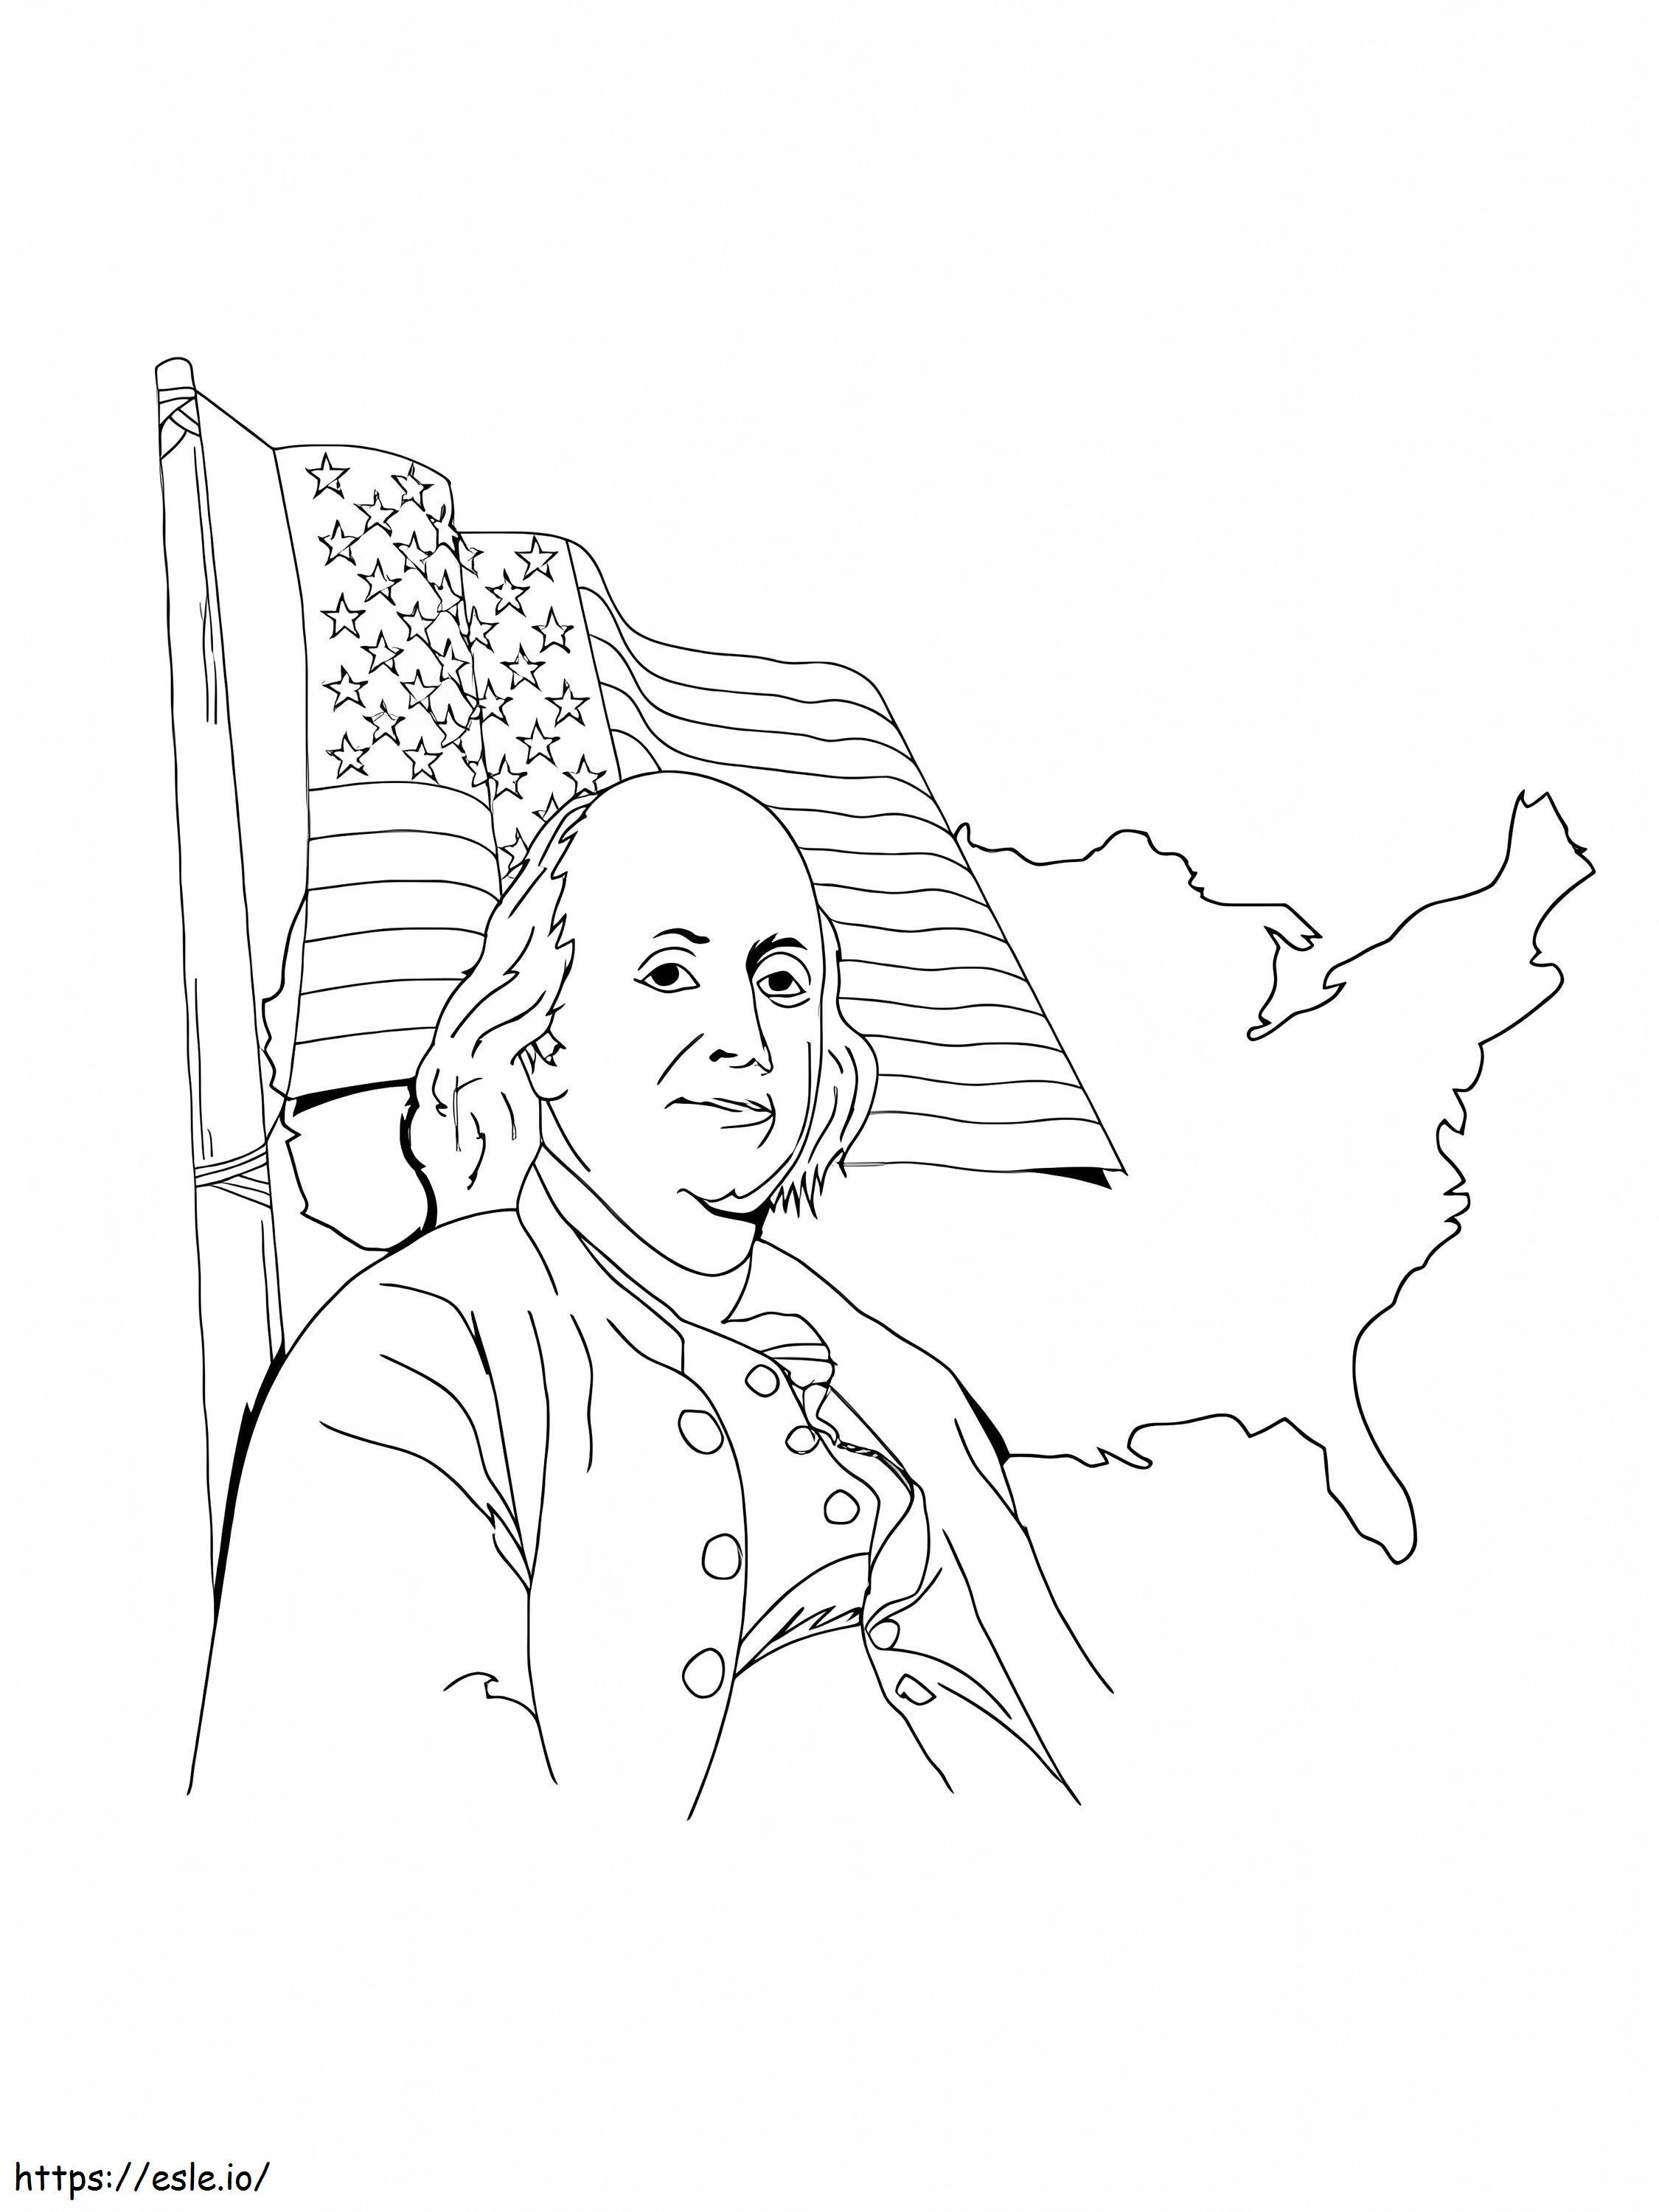 Benjamin Franklin 2 coloring page